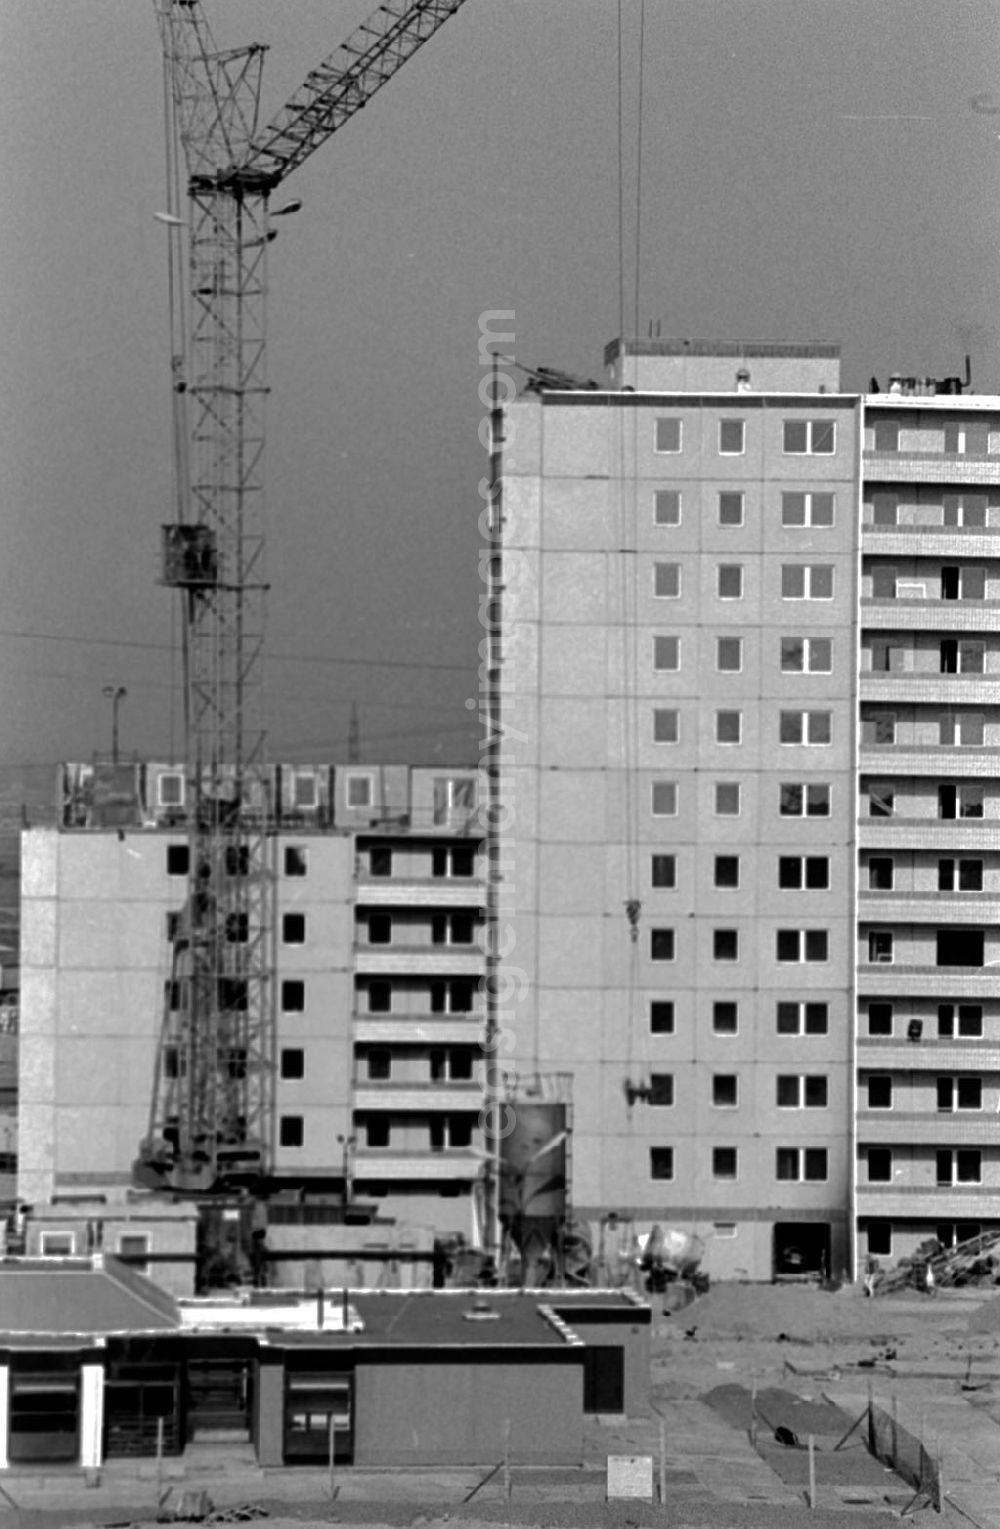 GDR picture archive: Berlin-Hellersdorf - Wohnungsbau - WBK Frankfurt/ Oder und Magdeburg in der Stendaler Str. - Hellersdorf 23.1